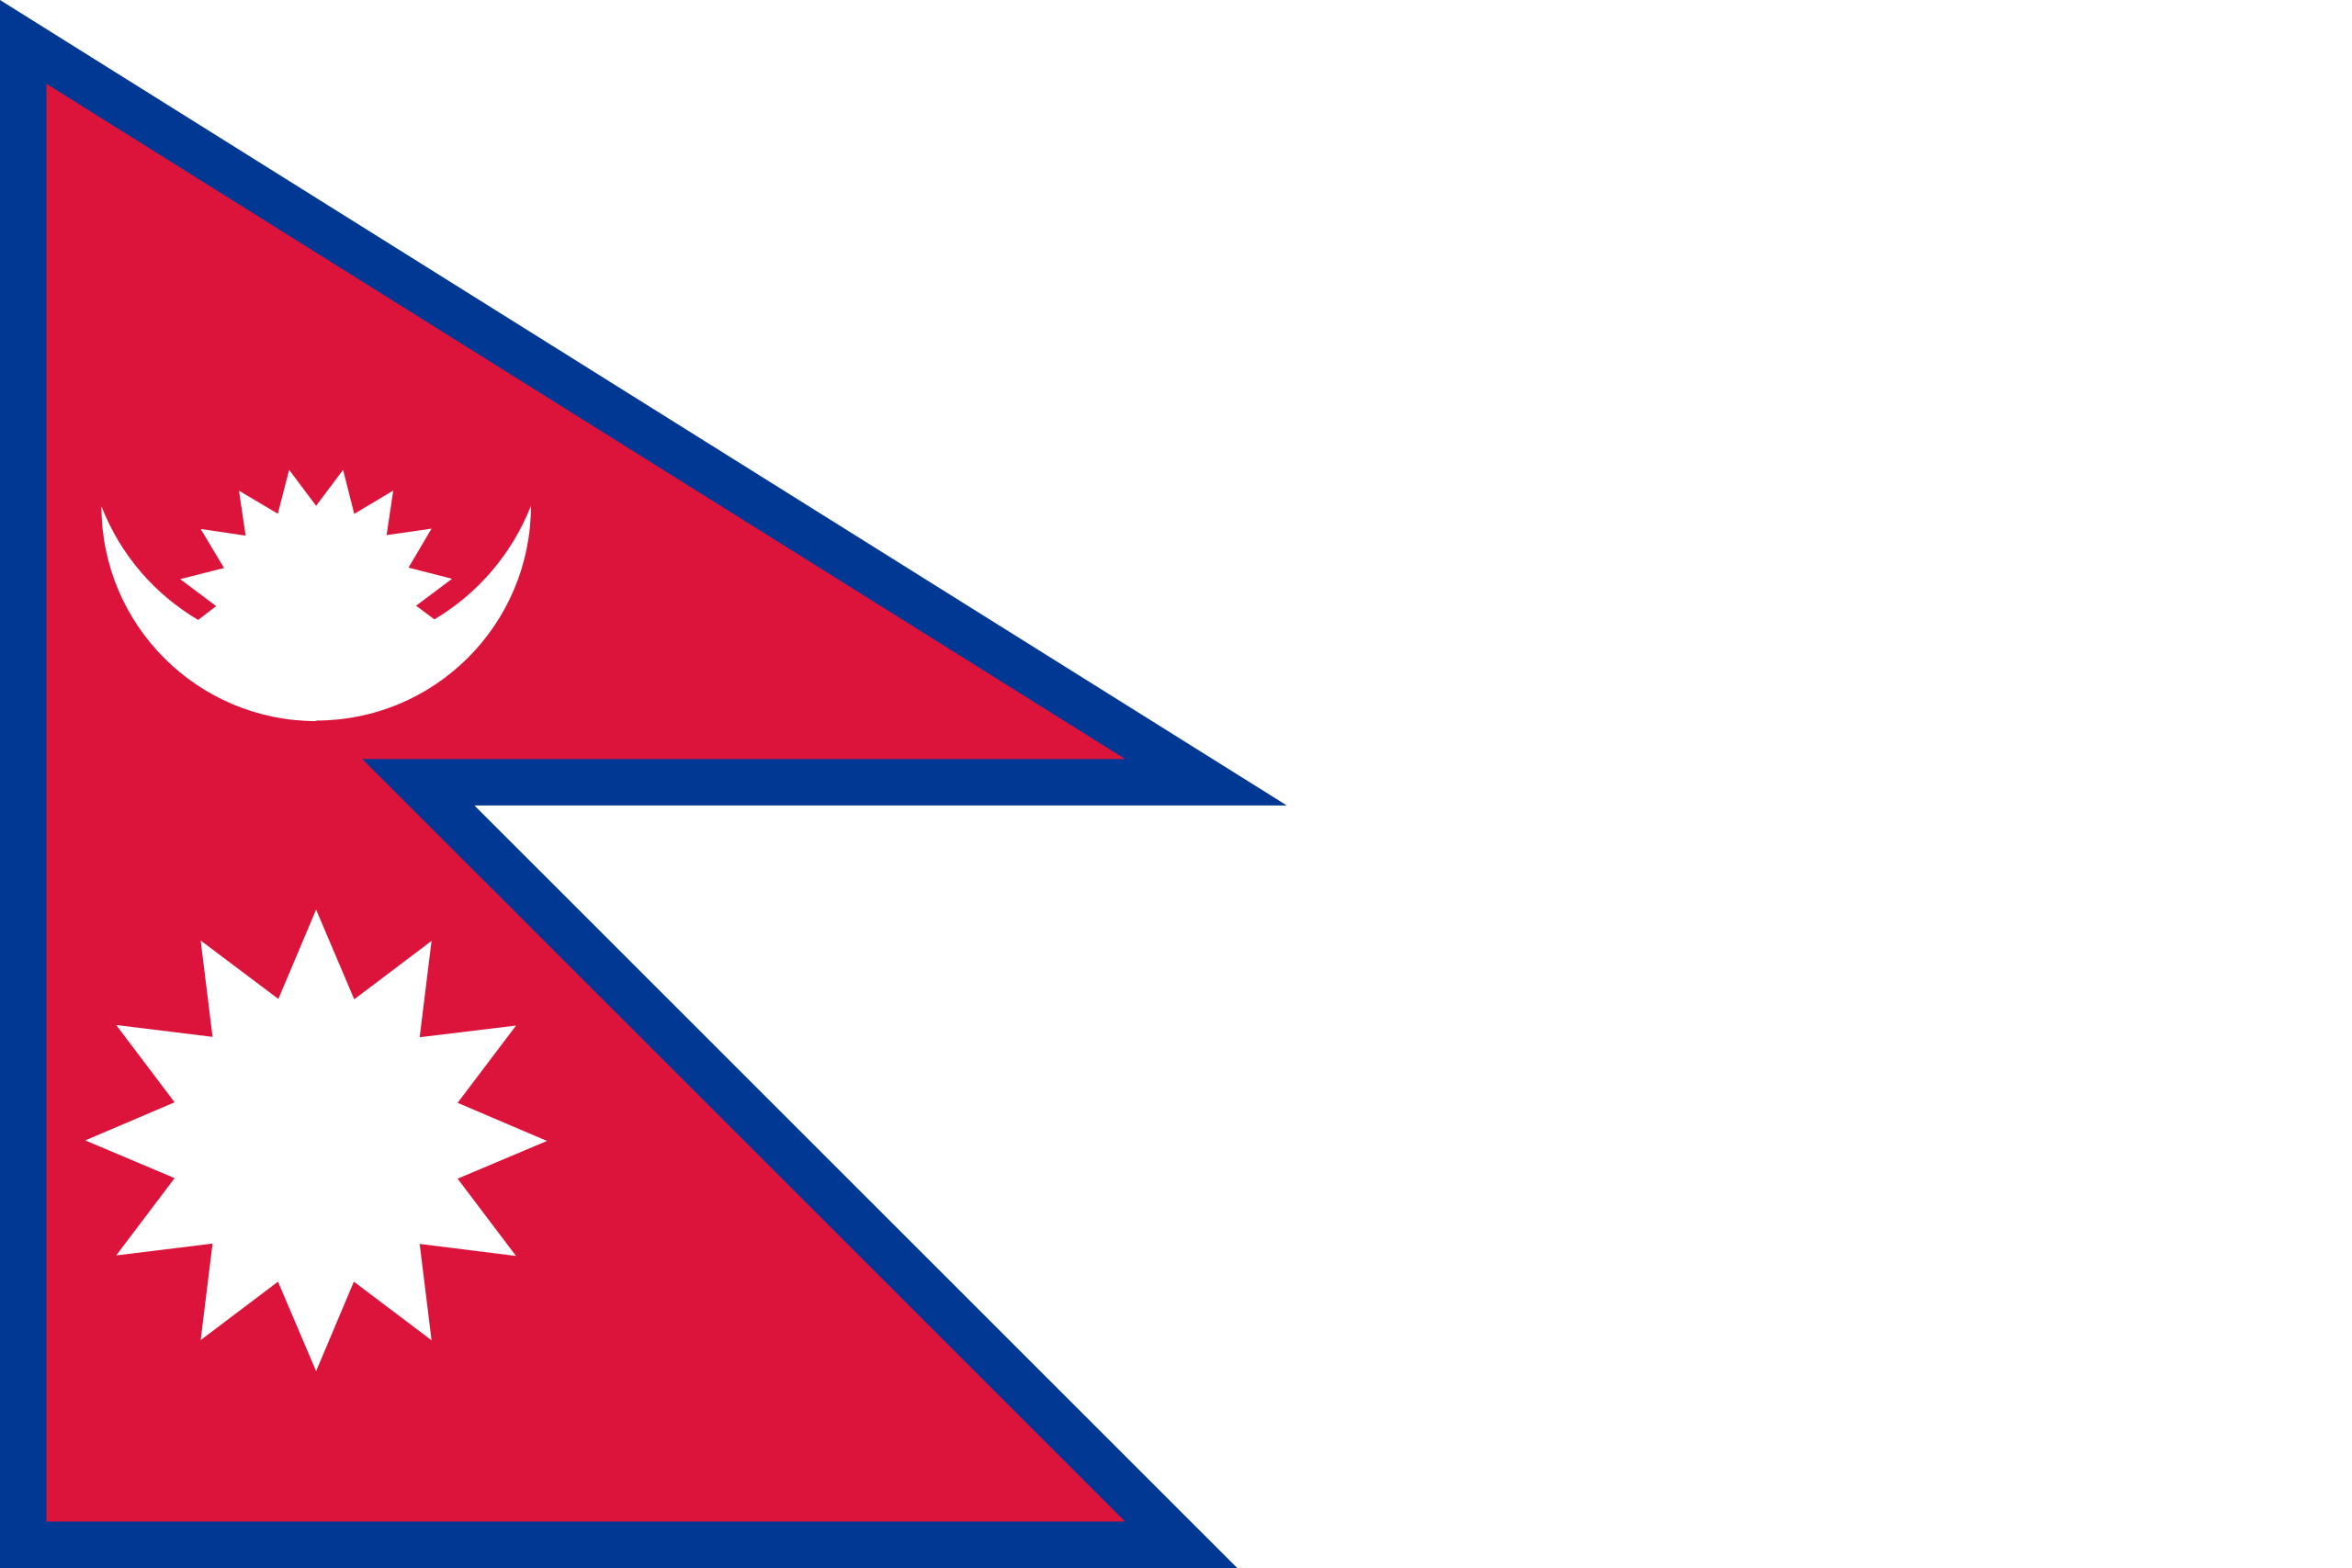 Quốc kỳ Nepal là biểu tượng của đất nước kỳ lạ này, nổi tiếng với các ngọn núi cao nhất thế giới và văn hoá đa dạng. Hãy xem hình ảnh của quốc kỳ Nepal để khám phá thêm về văn hoá và lịch sử của quốc gia này.